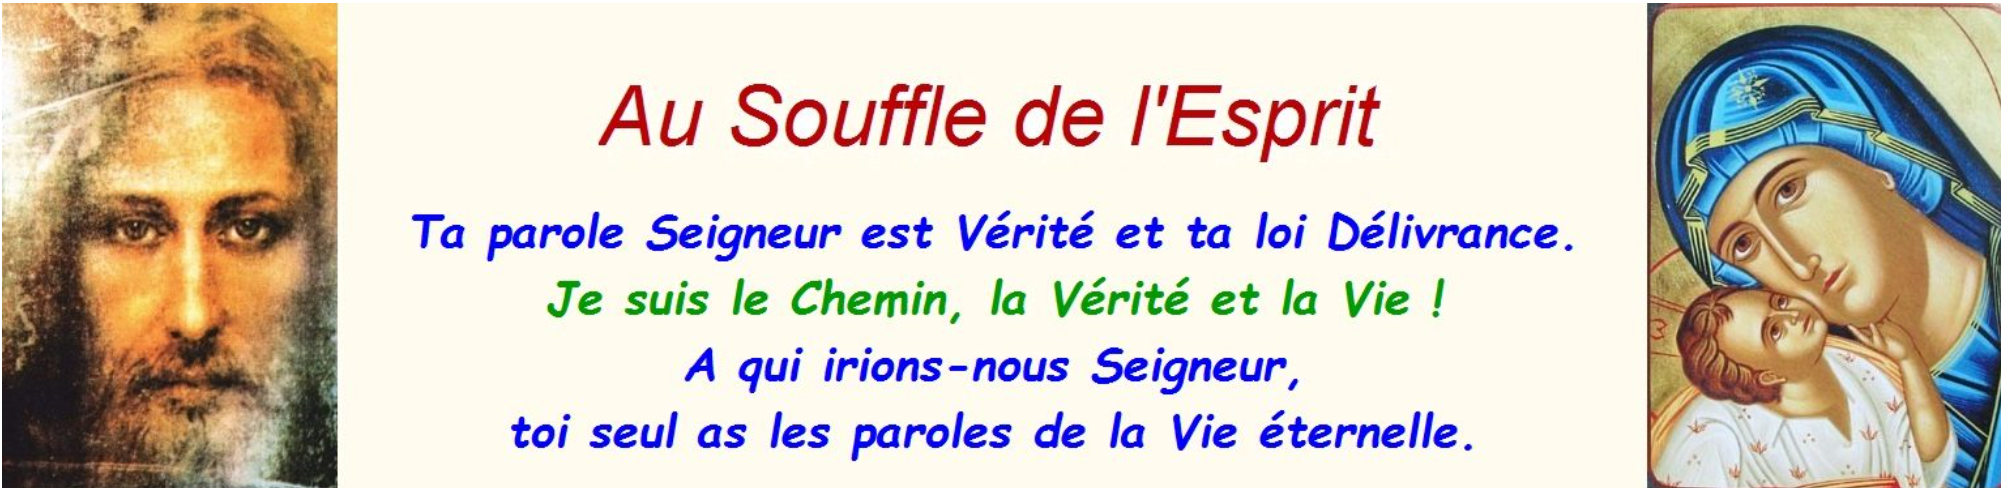 Un site internet pour la revue catholique "Au Souffle de l'Esprit" Bannière-ASDE